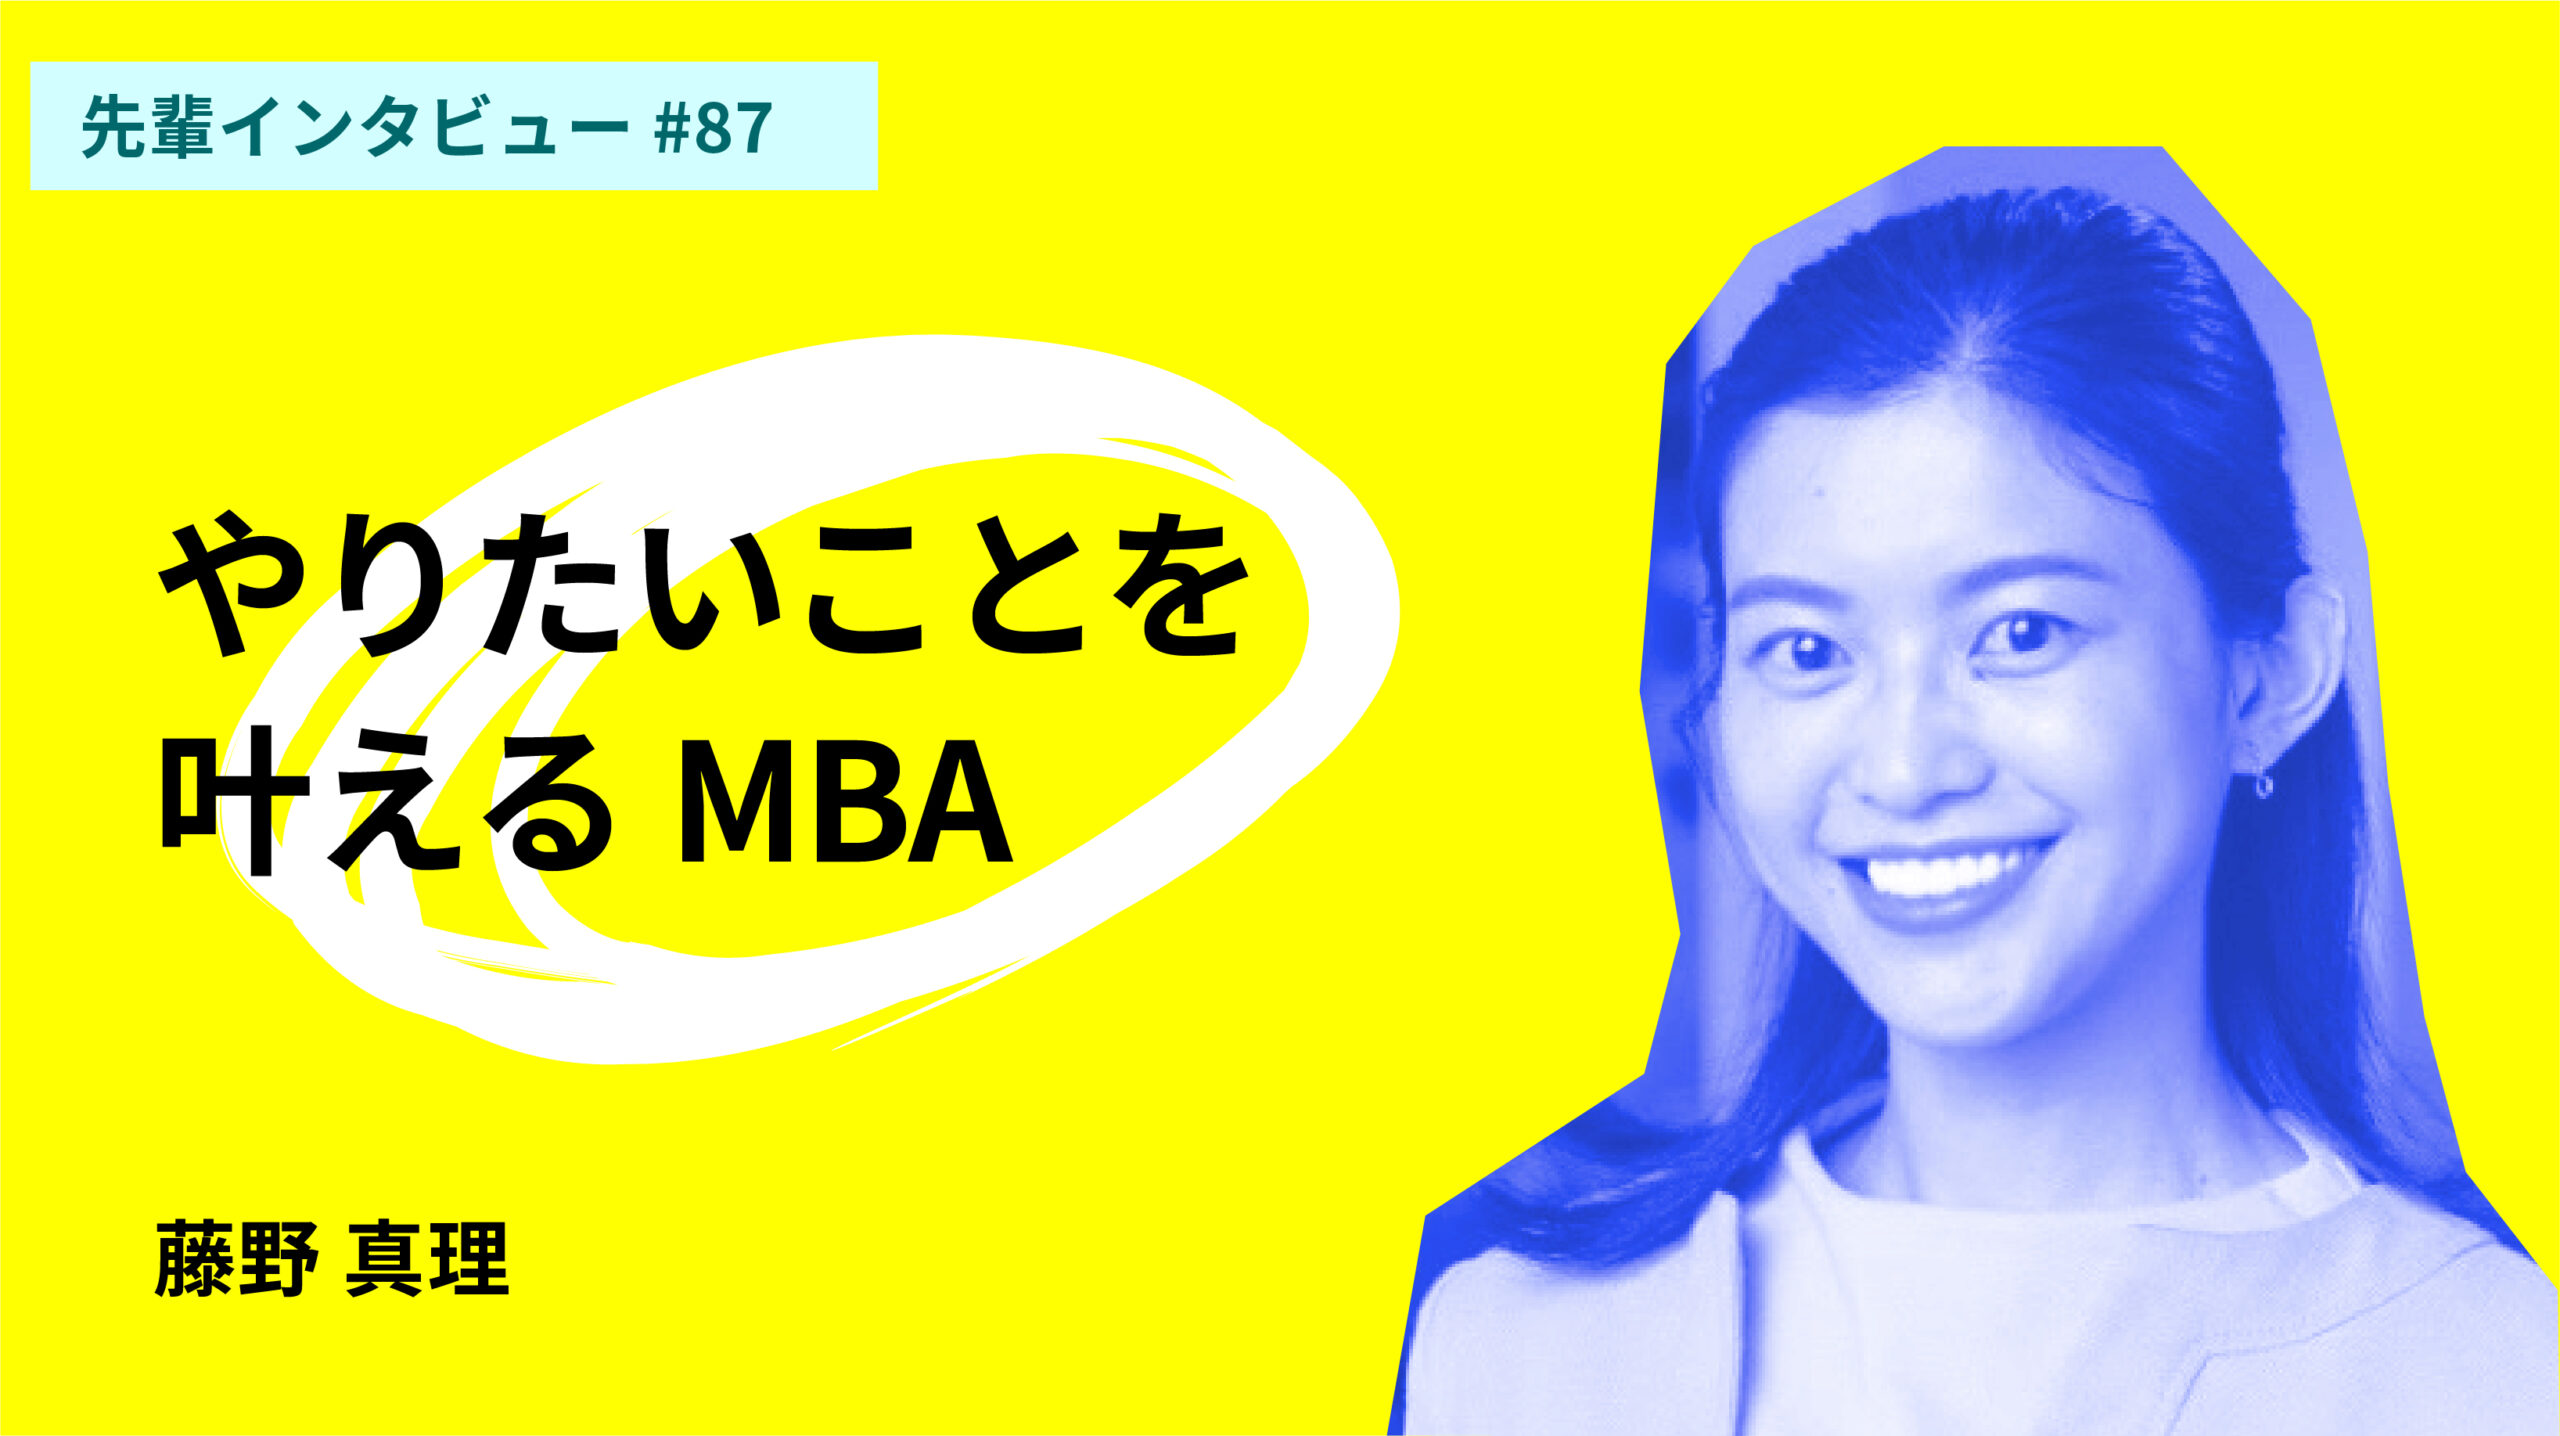 [ランキング] 日本から学べるオンライン海外MBAまとめ10選